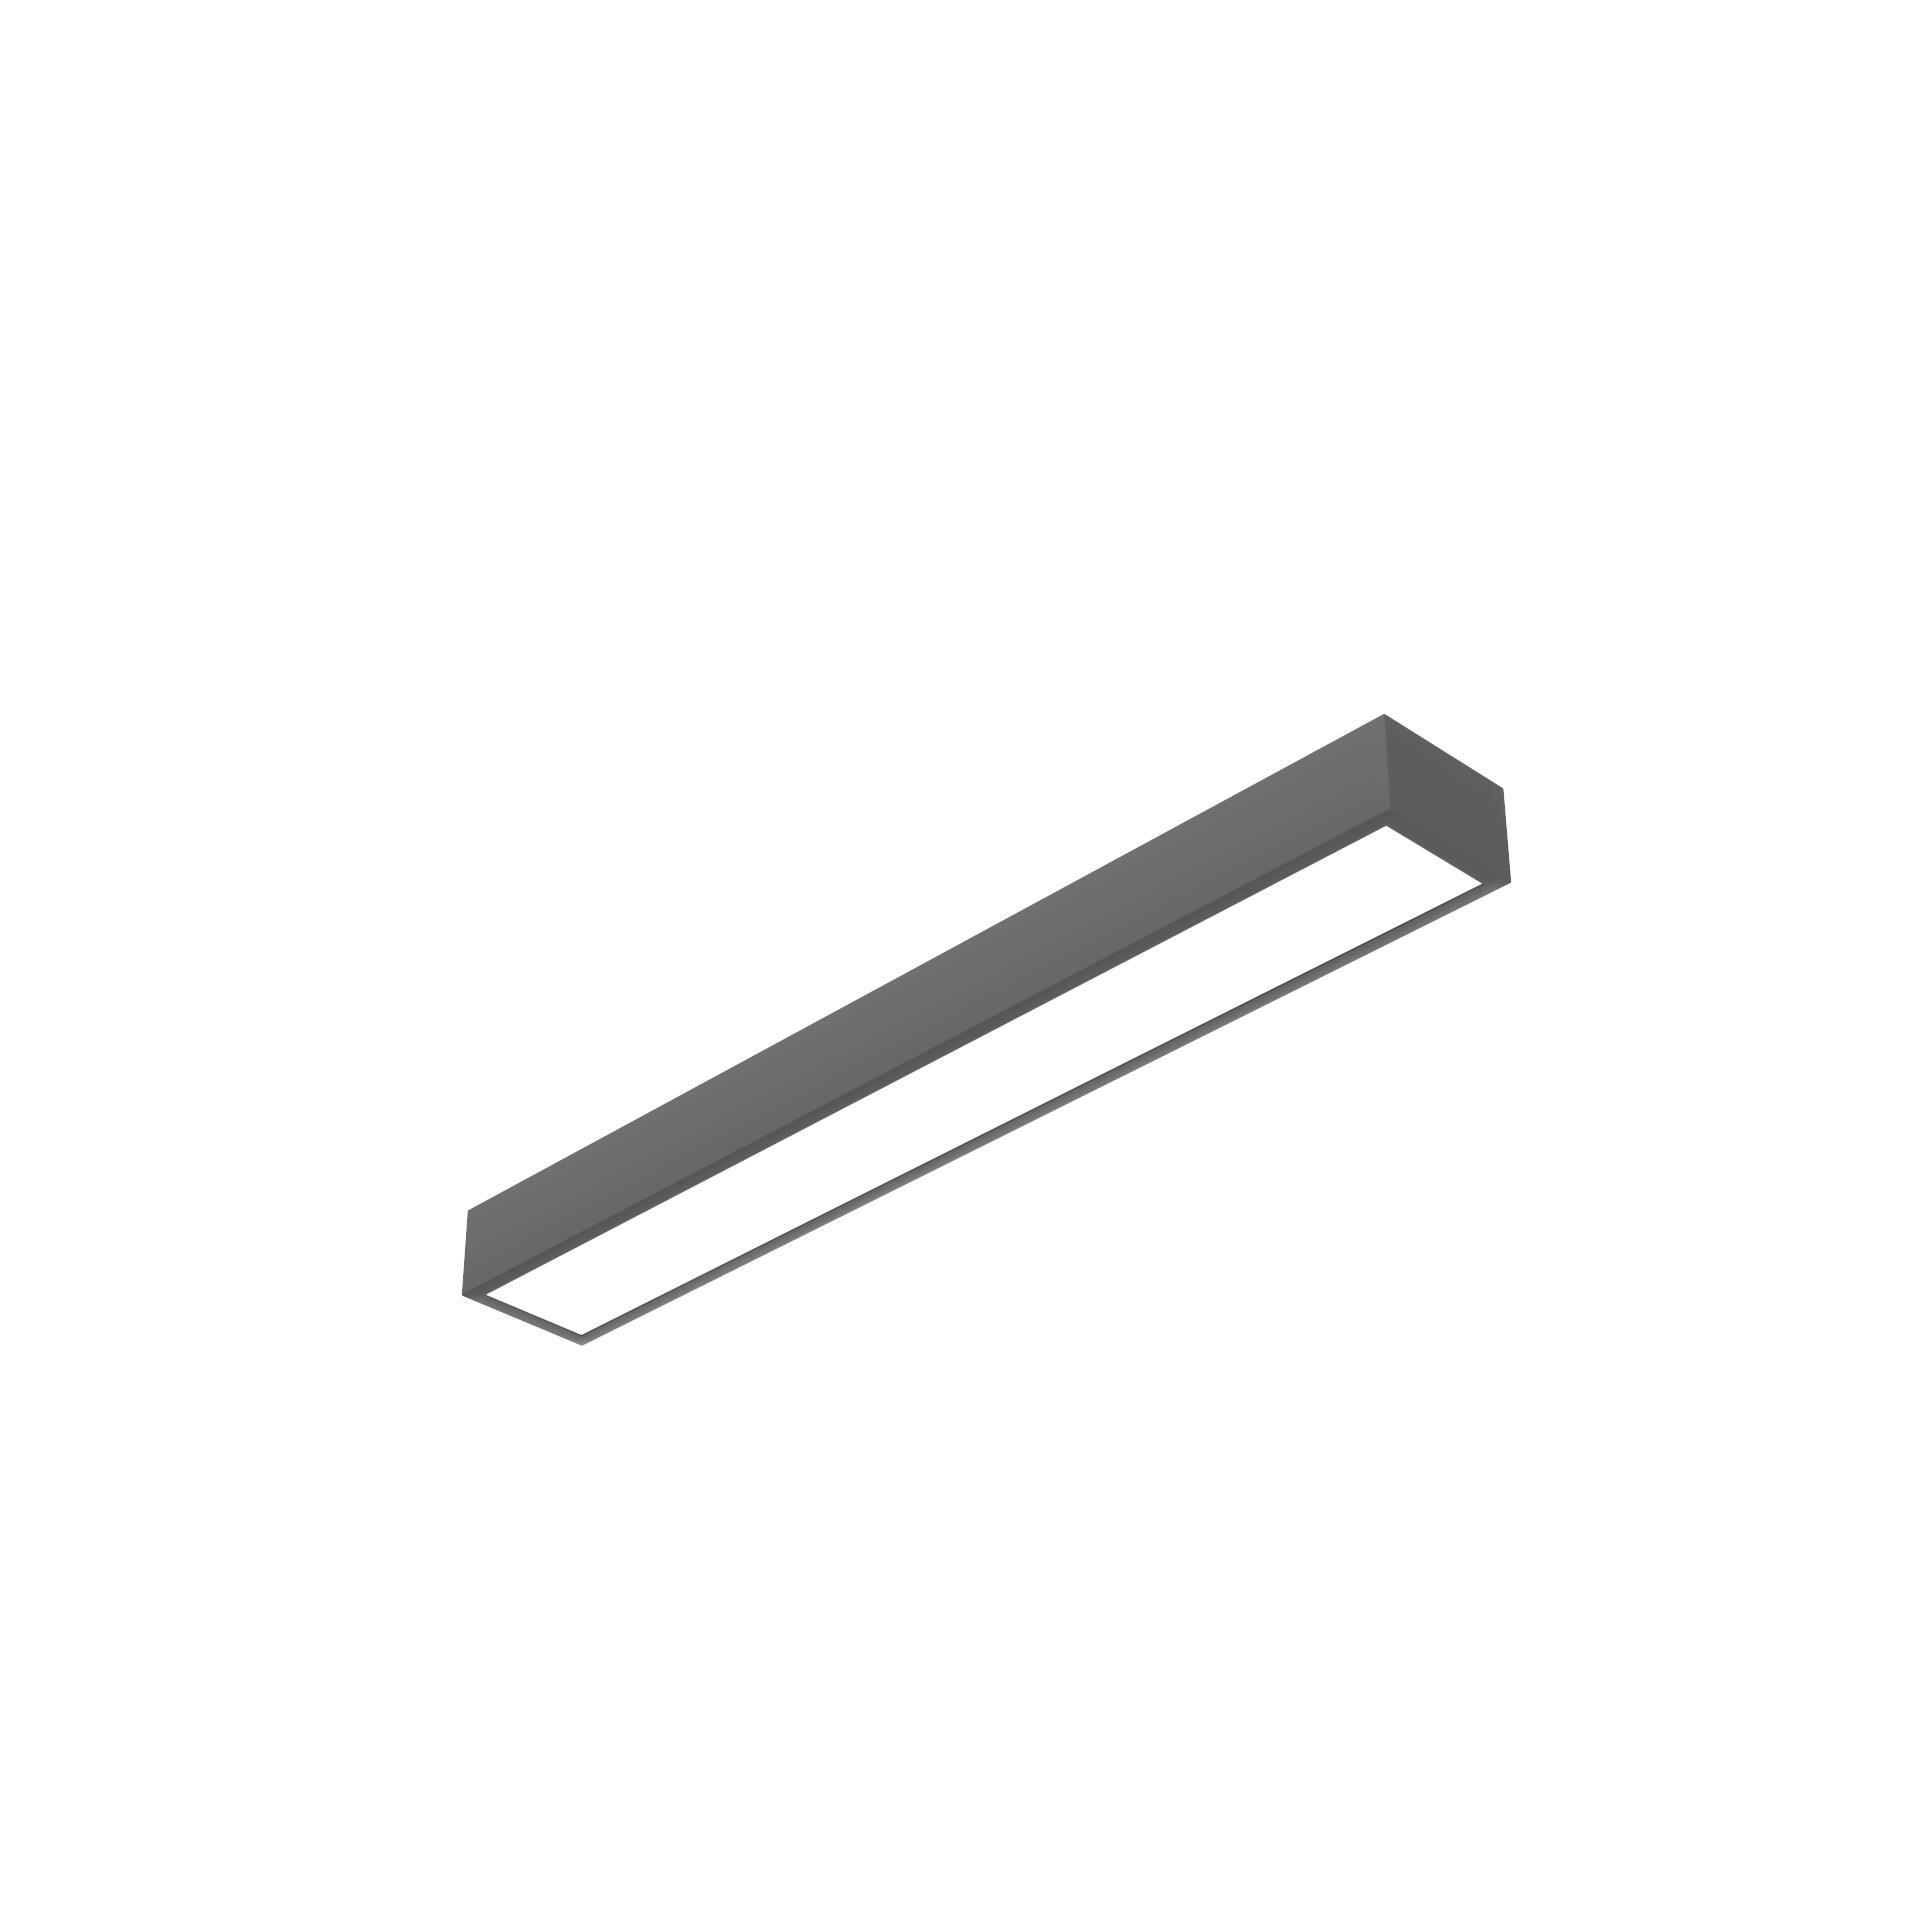 Светодиодный светильник VARTON Gexus Line Up'n'Down 1200x160x110 мм 20 Вт/35 Вт 4000 К RAL9005 черный муар опал-микропризма DALI